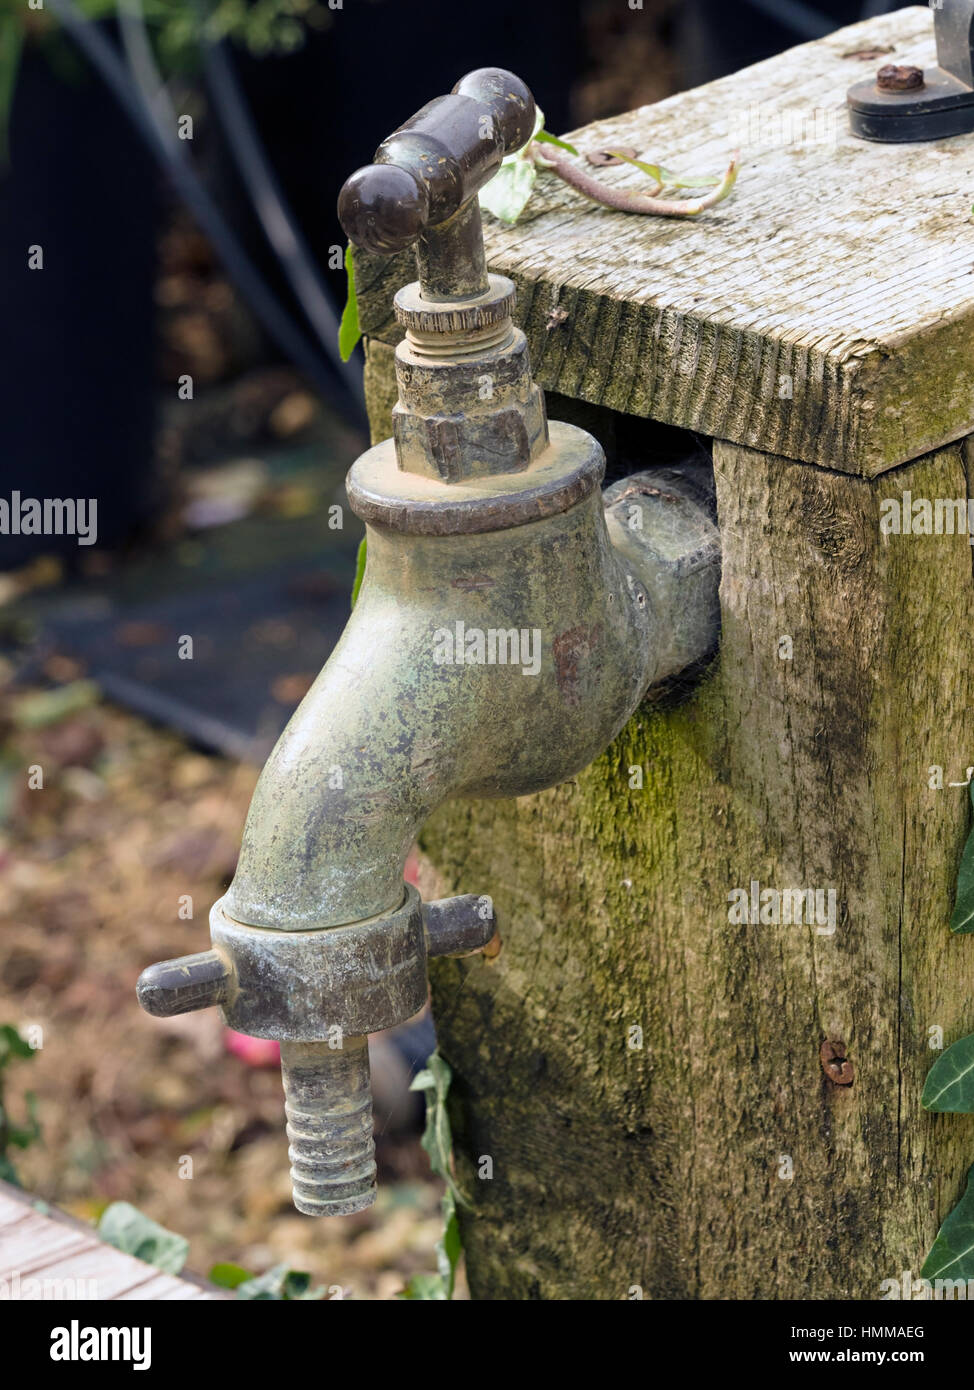 Outdoor garden water tap Stock Photo